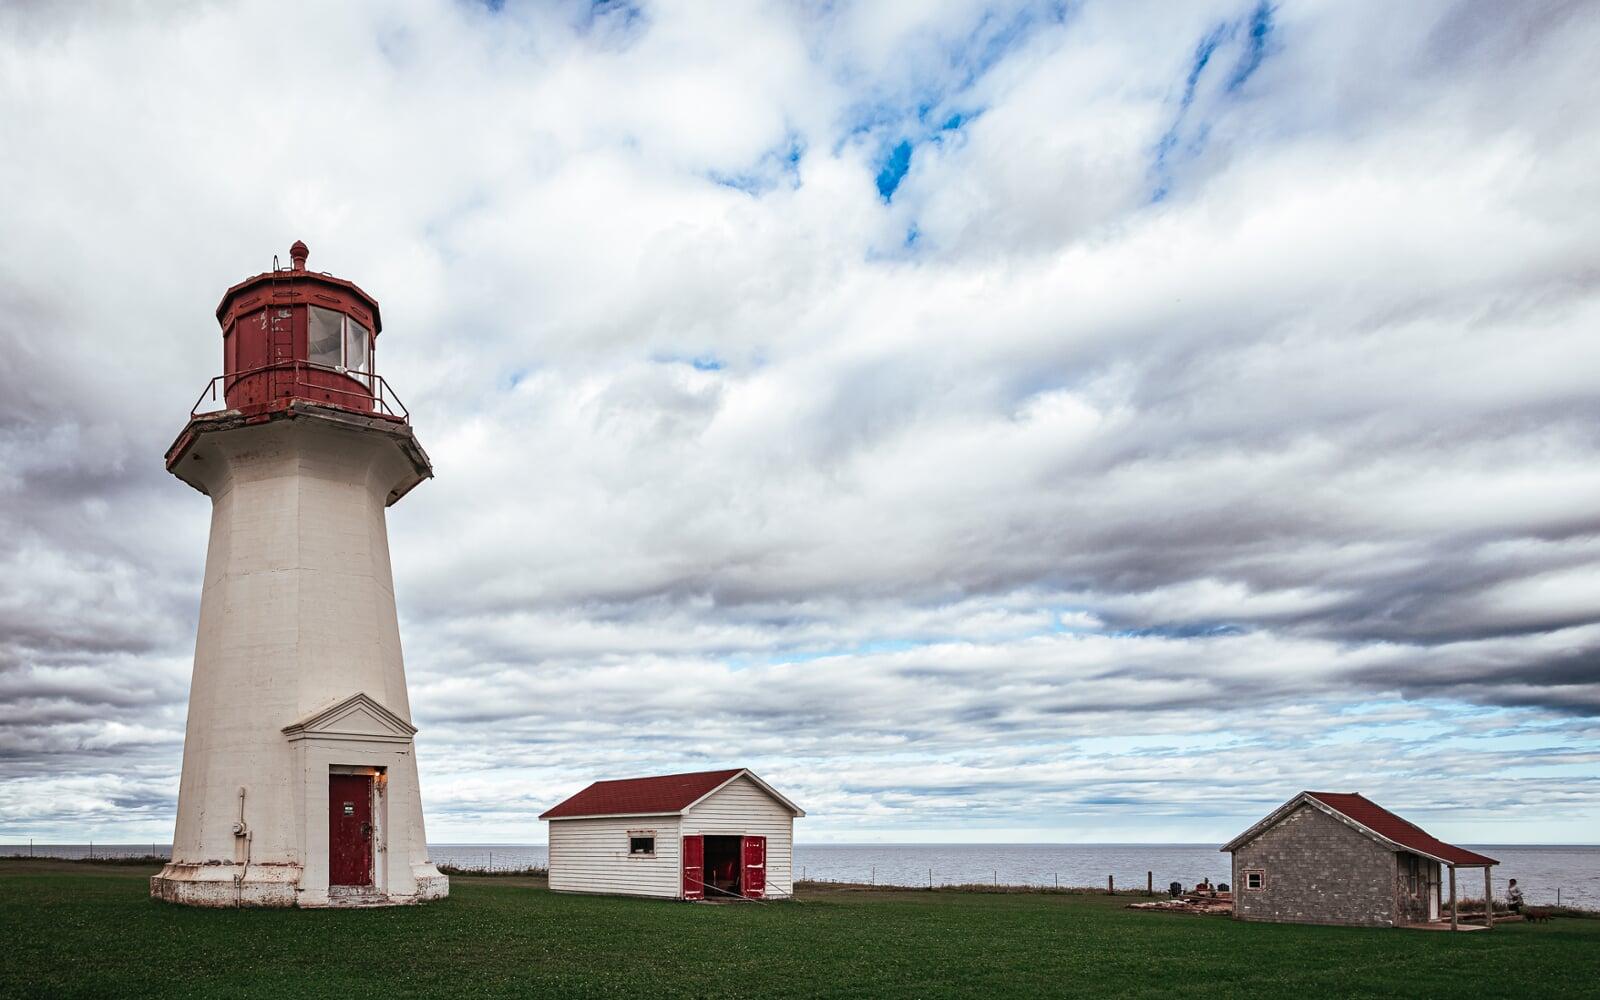 Cap d'Espoir lighthouse in Gaspesie, Quebec, Canada